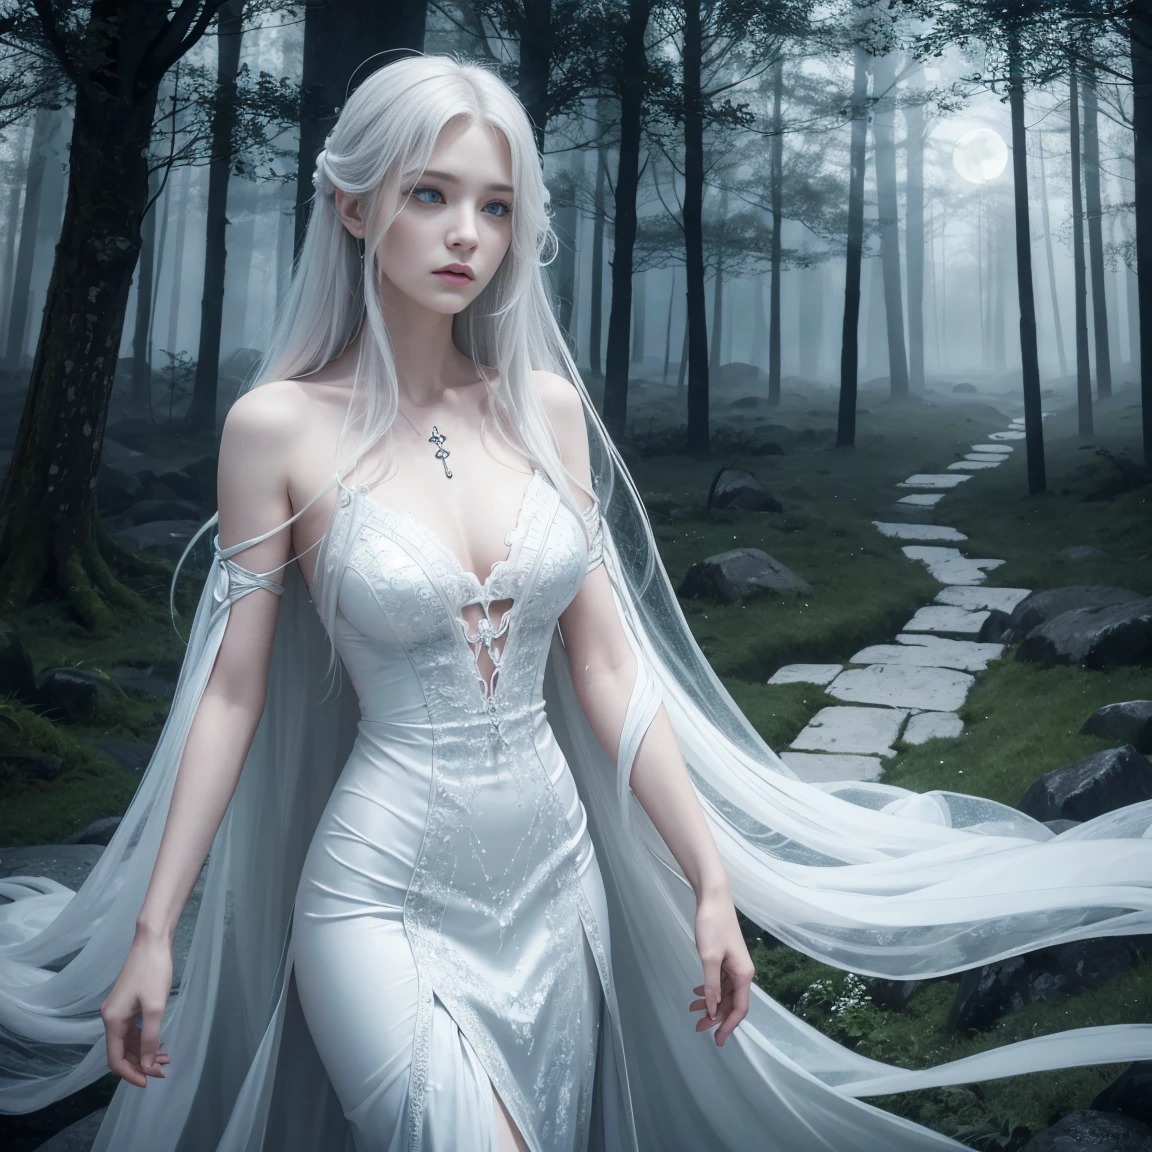 女妖的画像, 爱尔兰精神, 有着长长的银色头发和悲伤的表情. 她穿着一件飘逸的白色连衣裙，背景是一片雾蒙蒙的, 月光森林或古老城堡的诡异背景.
